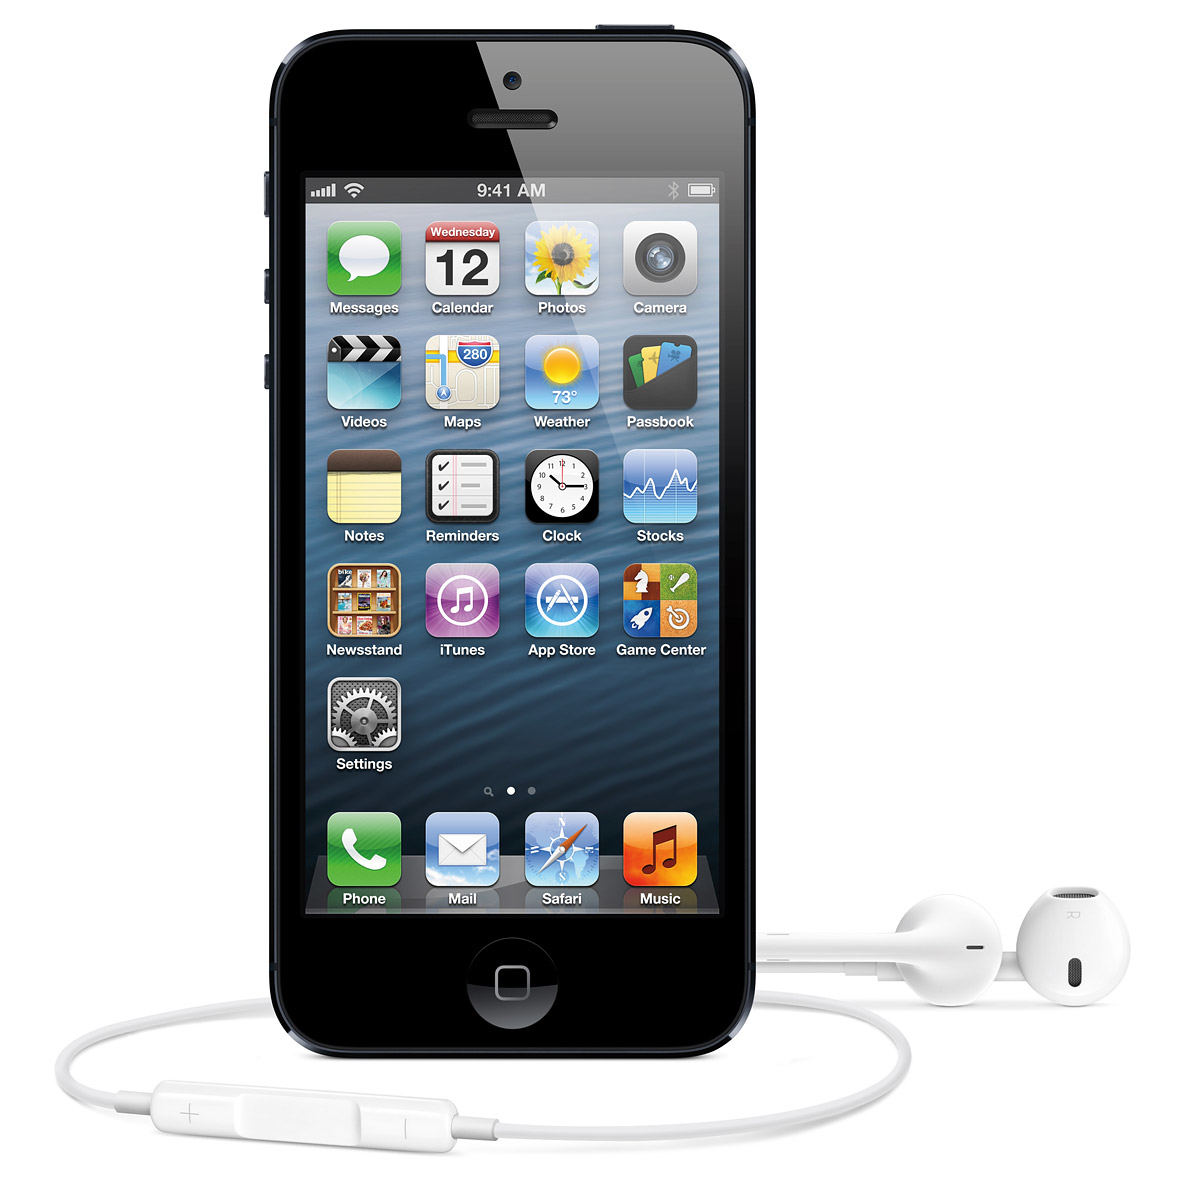 Apple iPhone 5 : Caratteristiche e Opinioni | JuzaPhoto